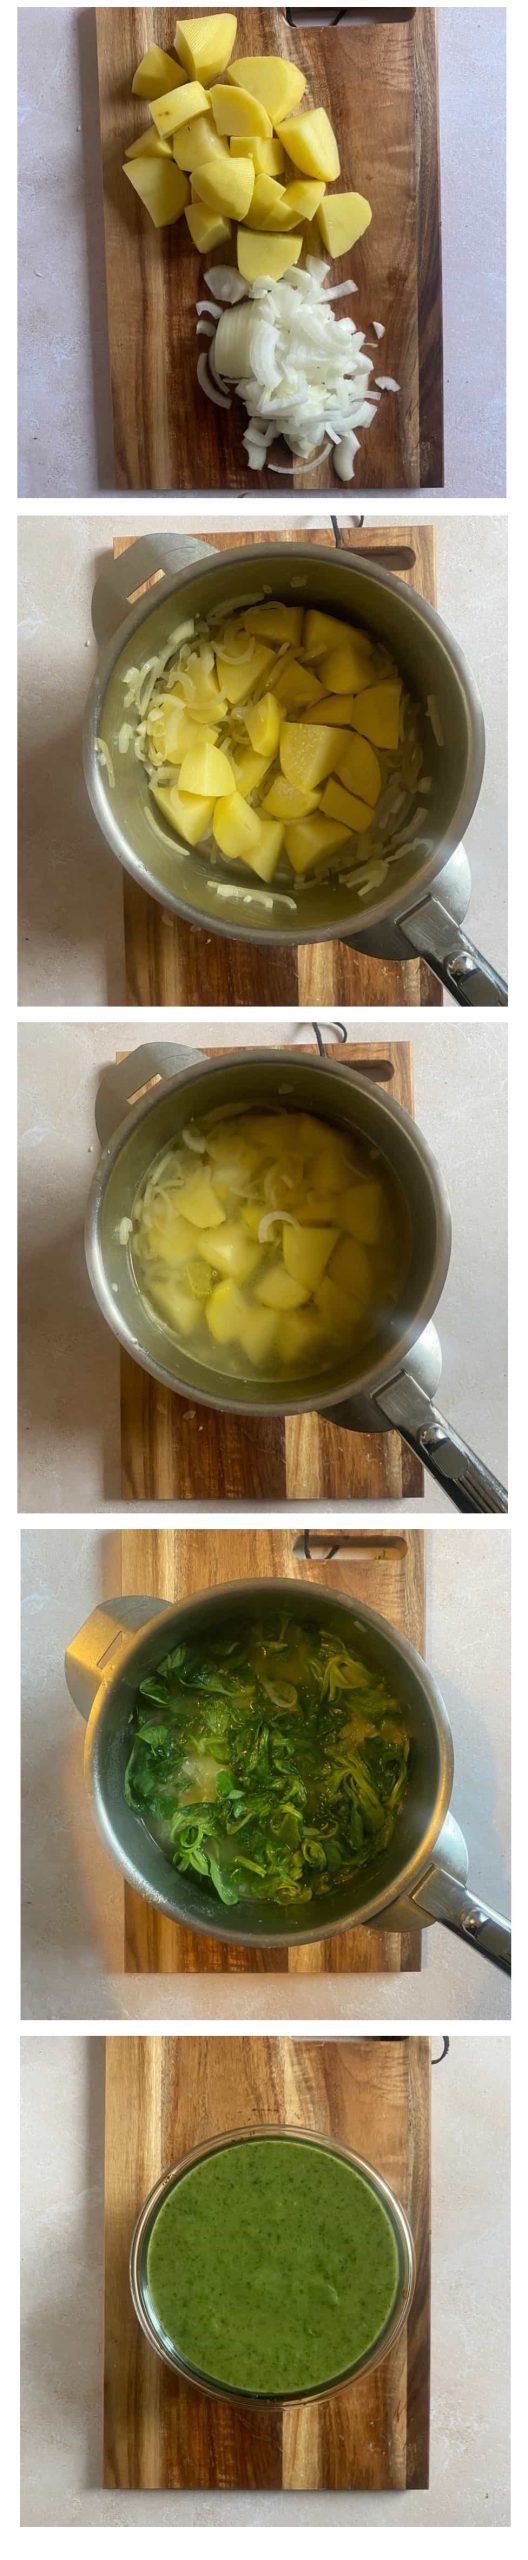 Sopa cremosa de espinacas, patatas y queso fresco de cabra